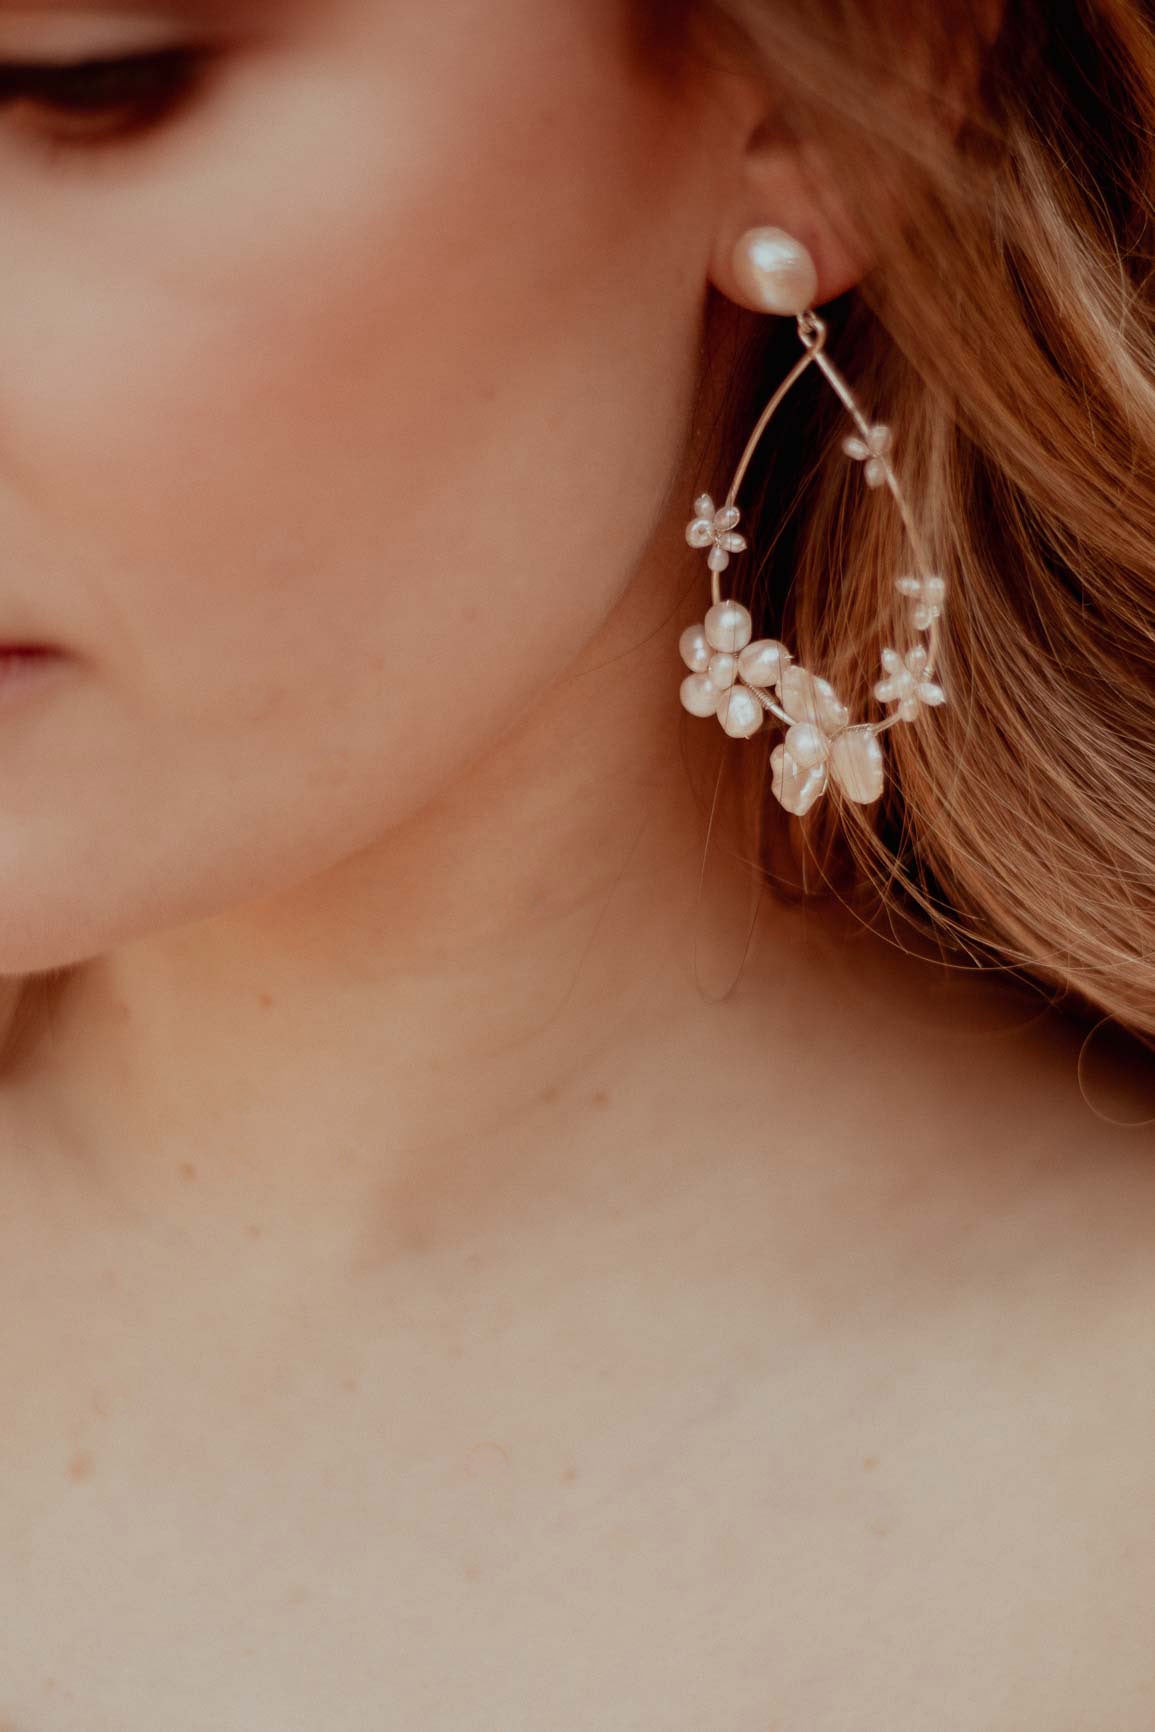 Claire de Lune earrings